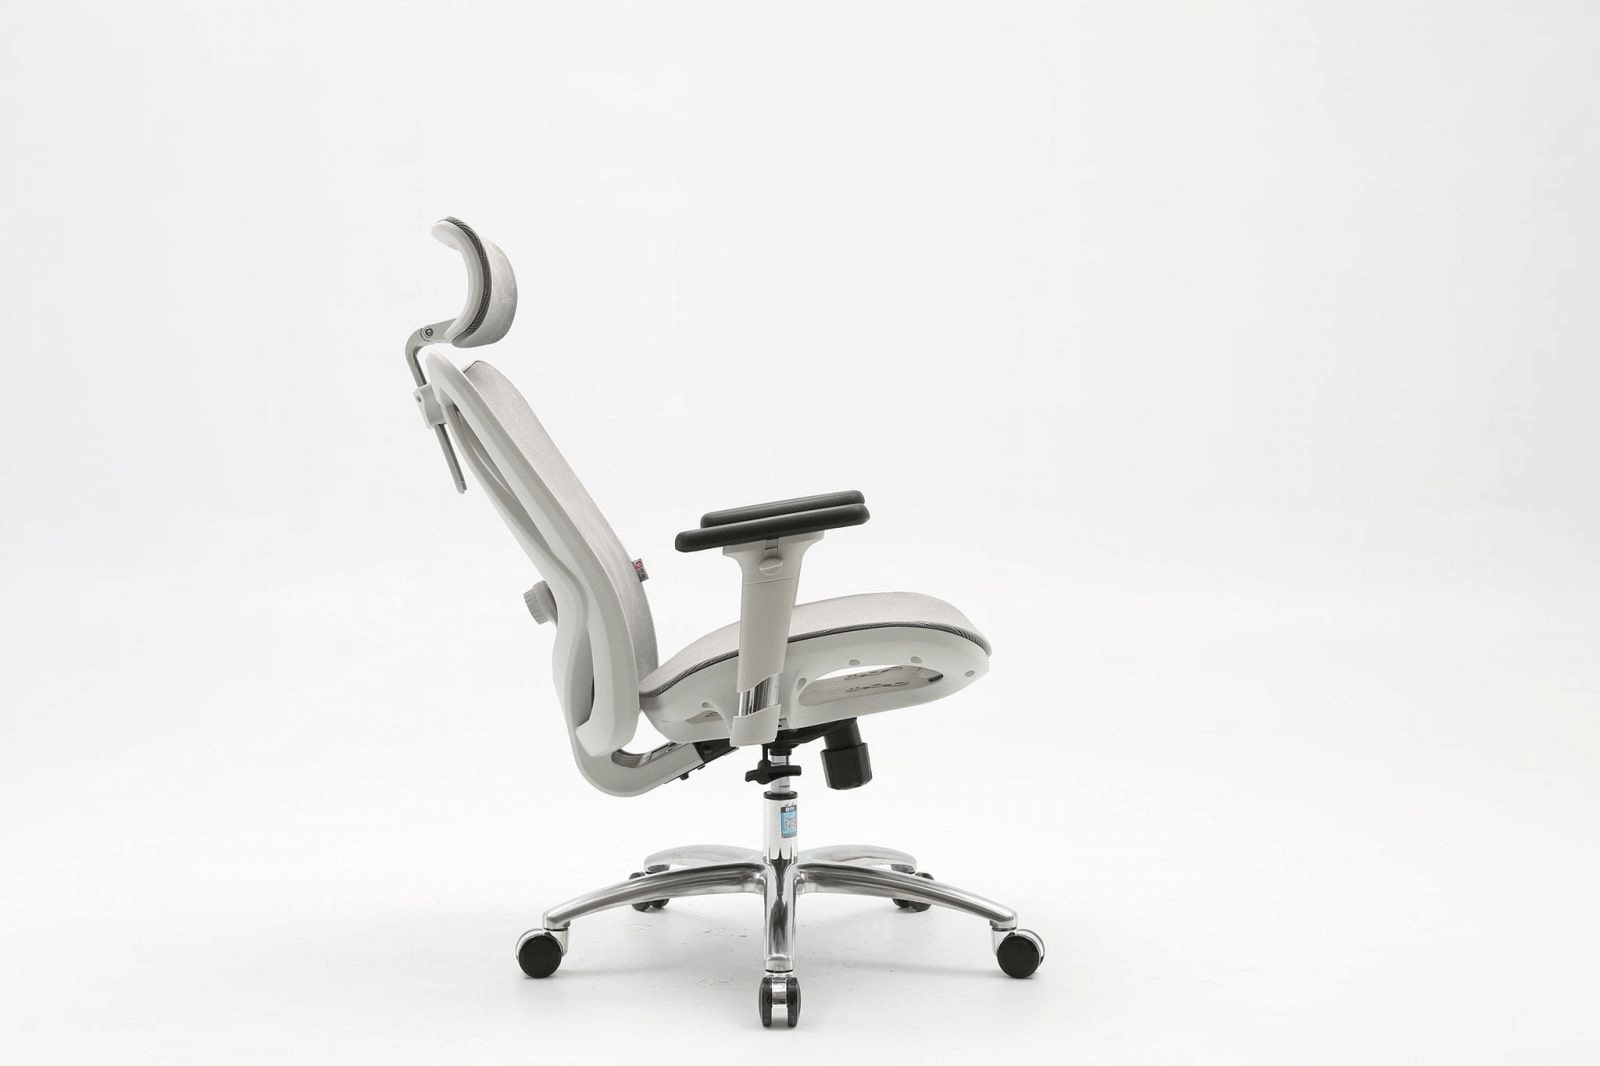 Phần tay ghế được thiết kế hiện đại, linh động, dễ dàng thay đổi chiều hướng